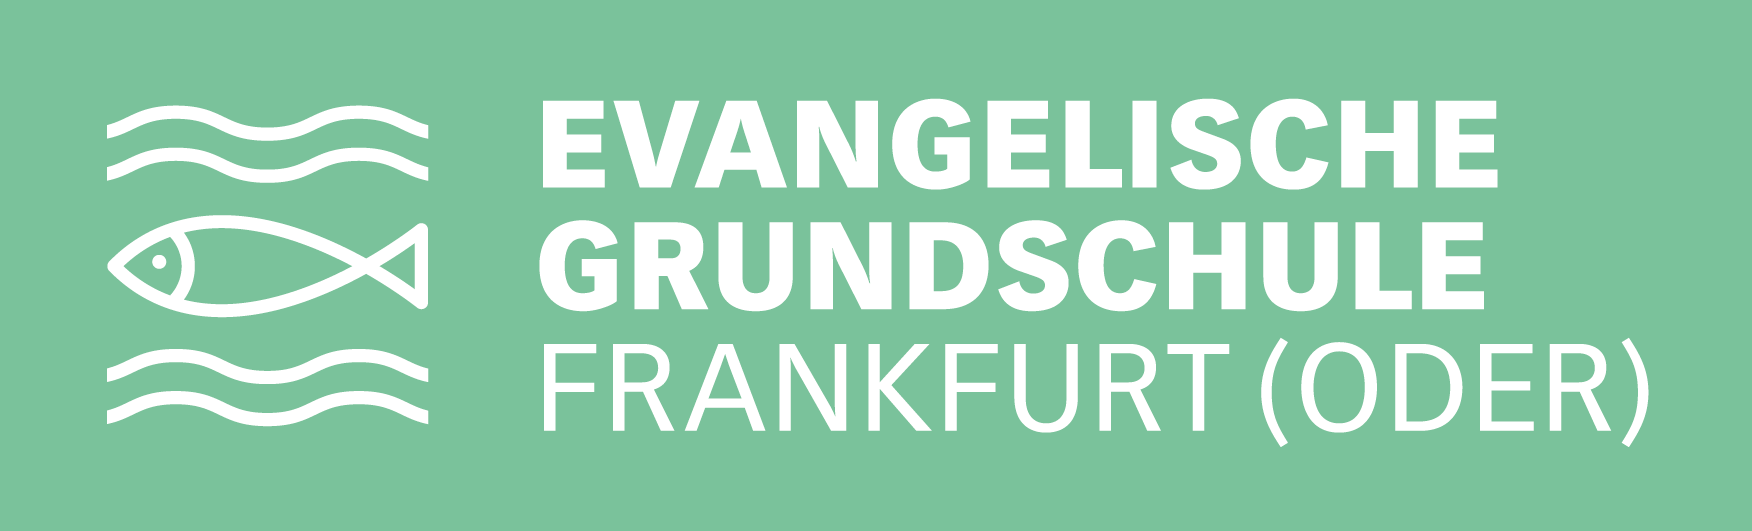 Evangelische Grundschule Frankfurt (Oder)